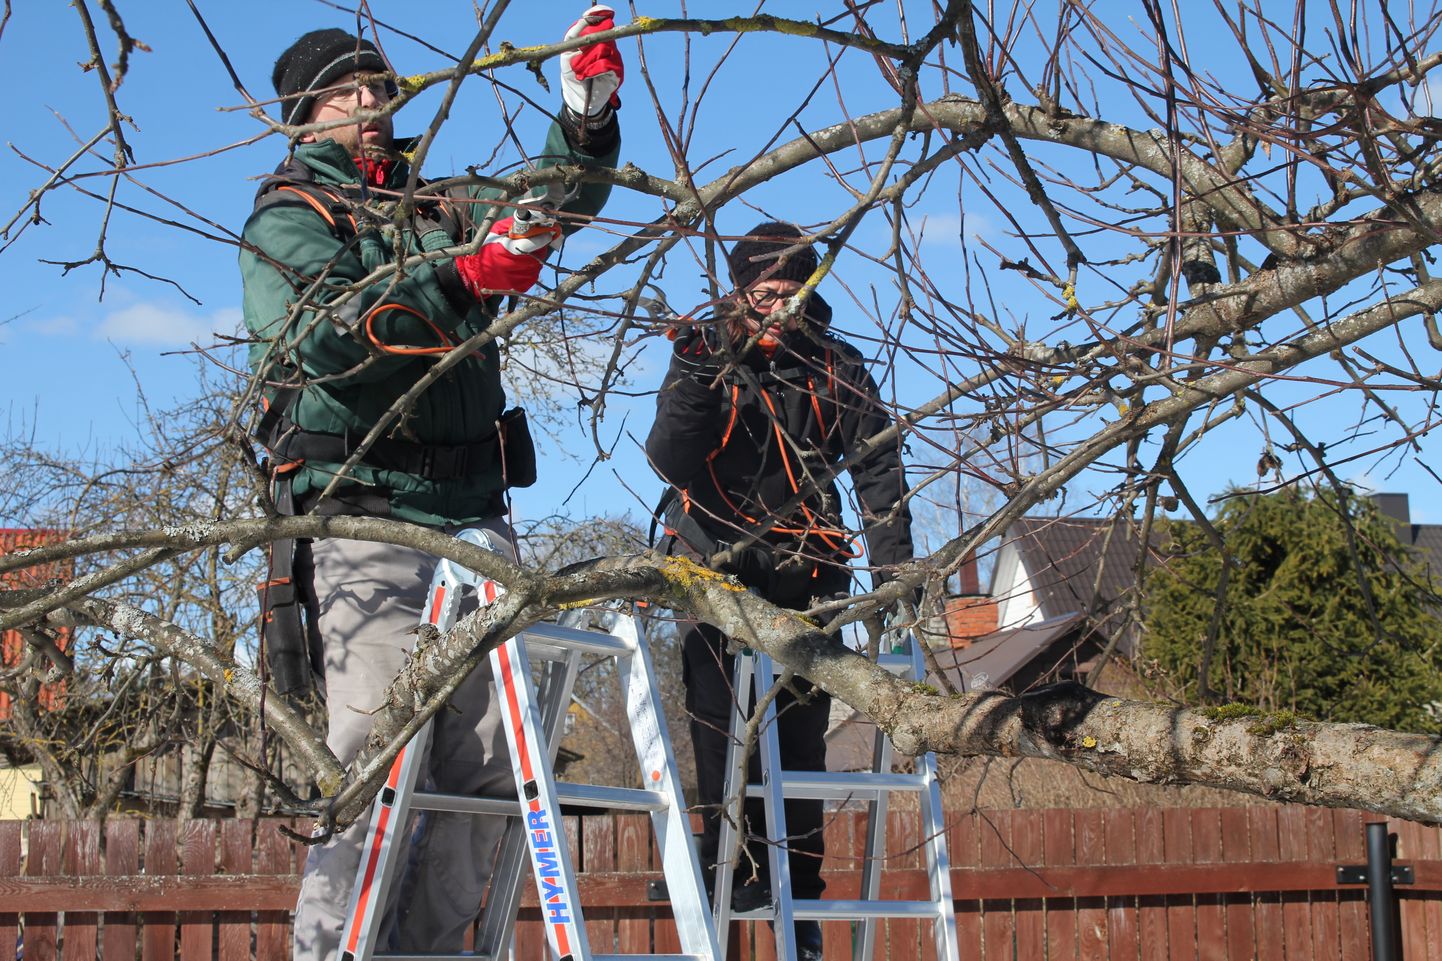 Perefirma VH Haljastus OÜ loonud Urmas
Haug ja Piret Virkepuu, seljakotid
seljas ja akutoitel oksakäärid käes, on parajasti õunapuudelt oksi eemaldamas.